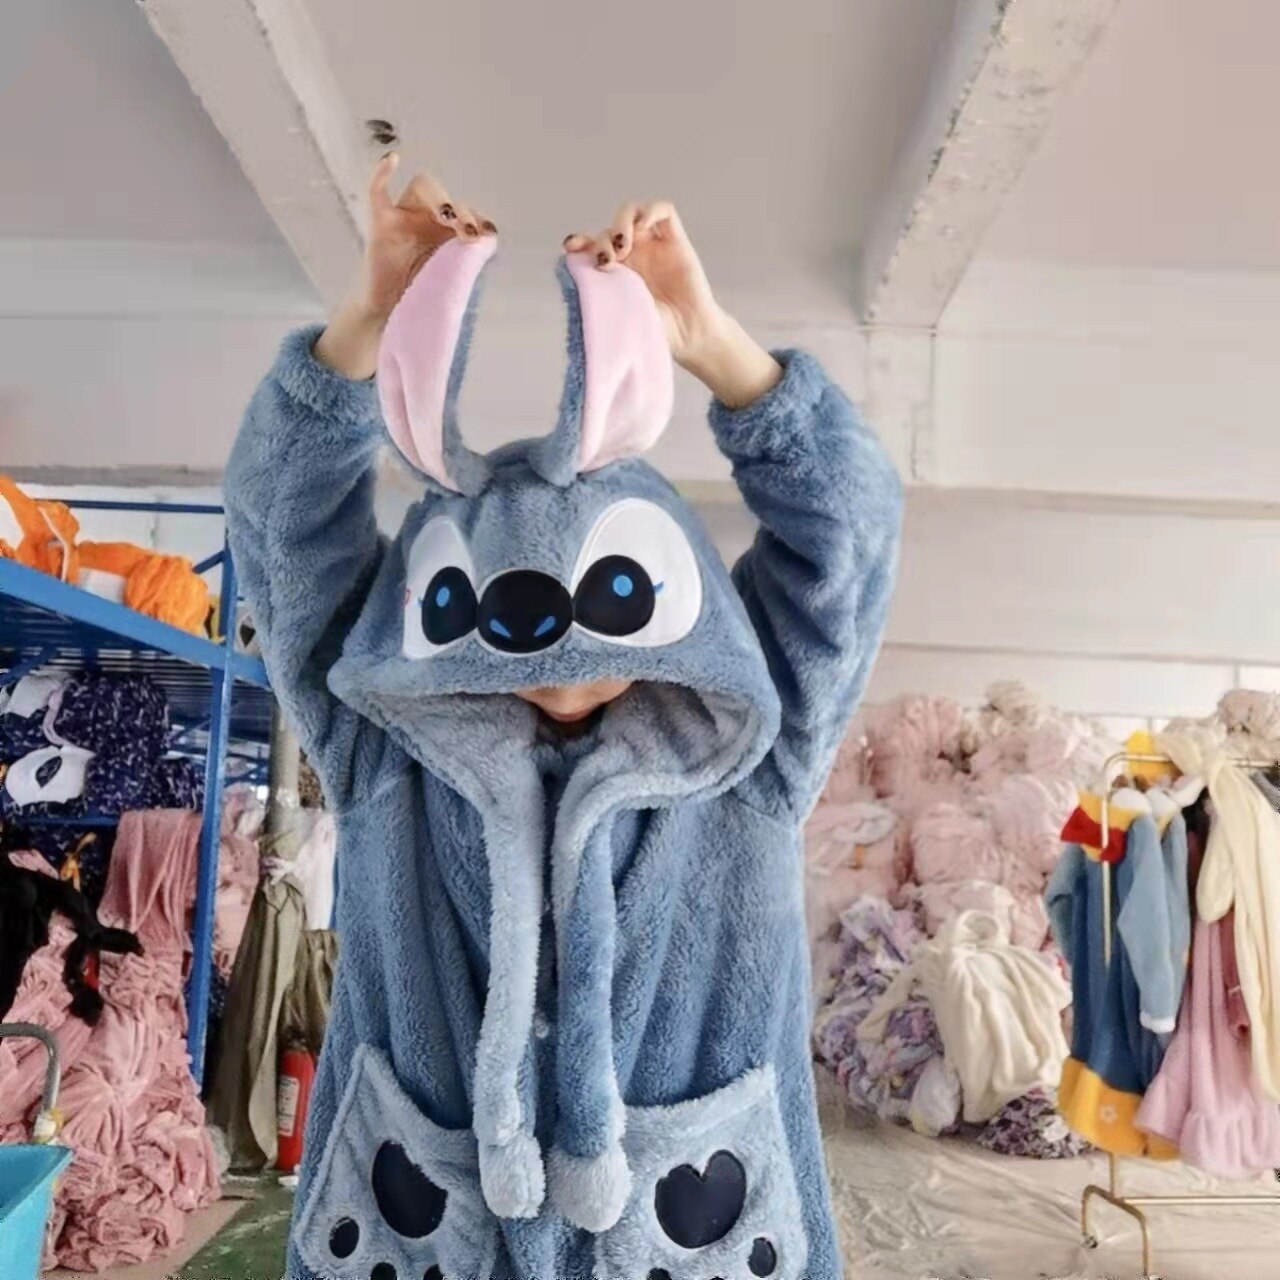 Peignoir pour enfant - Stitch - Taille 10 ans - Disney